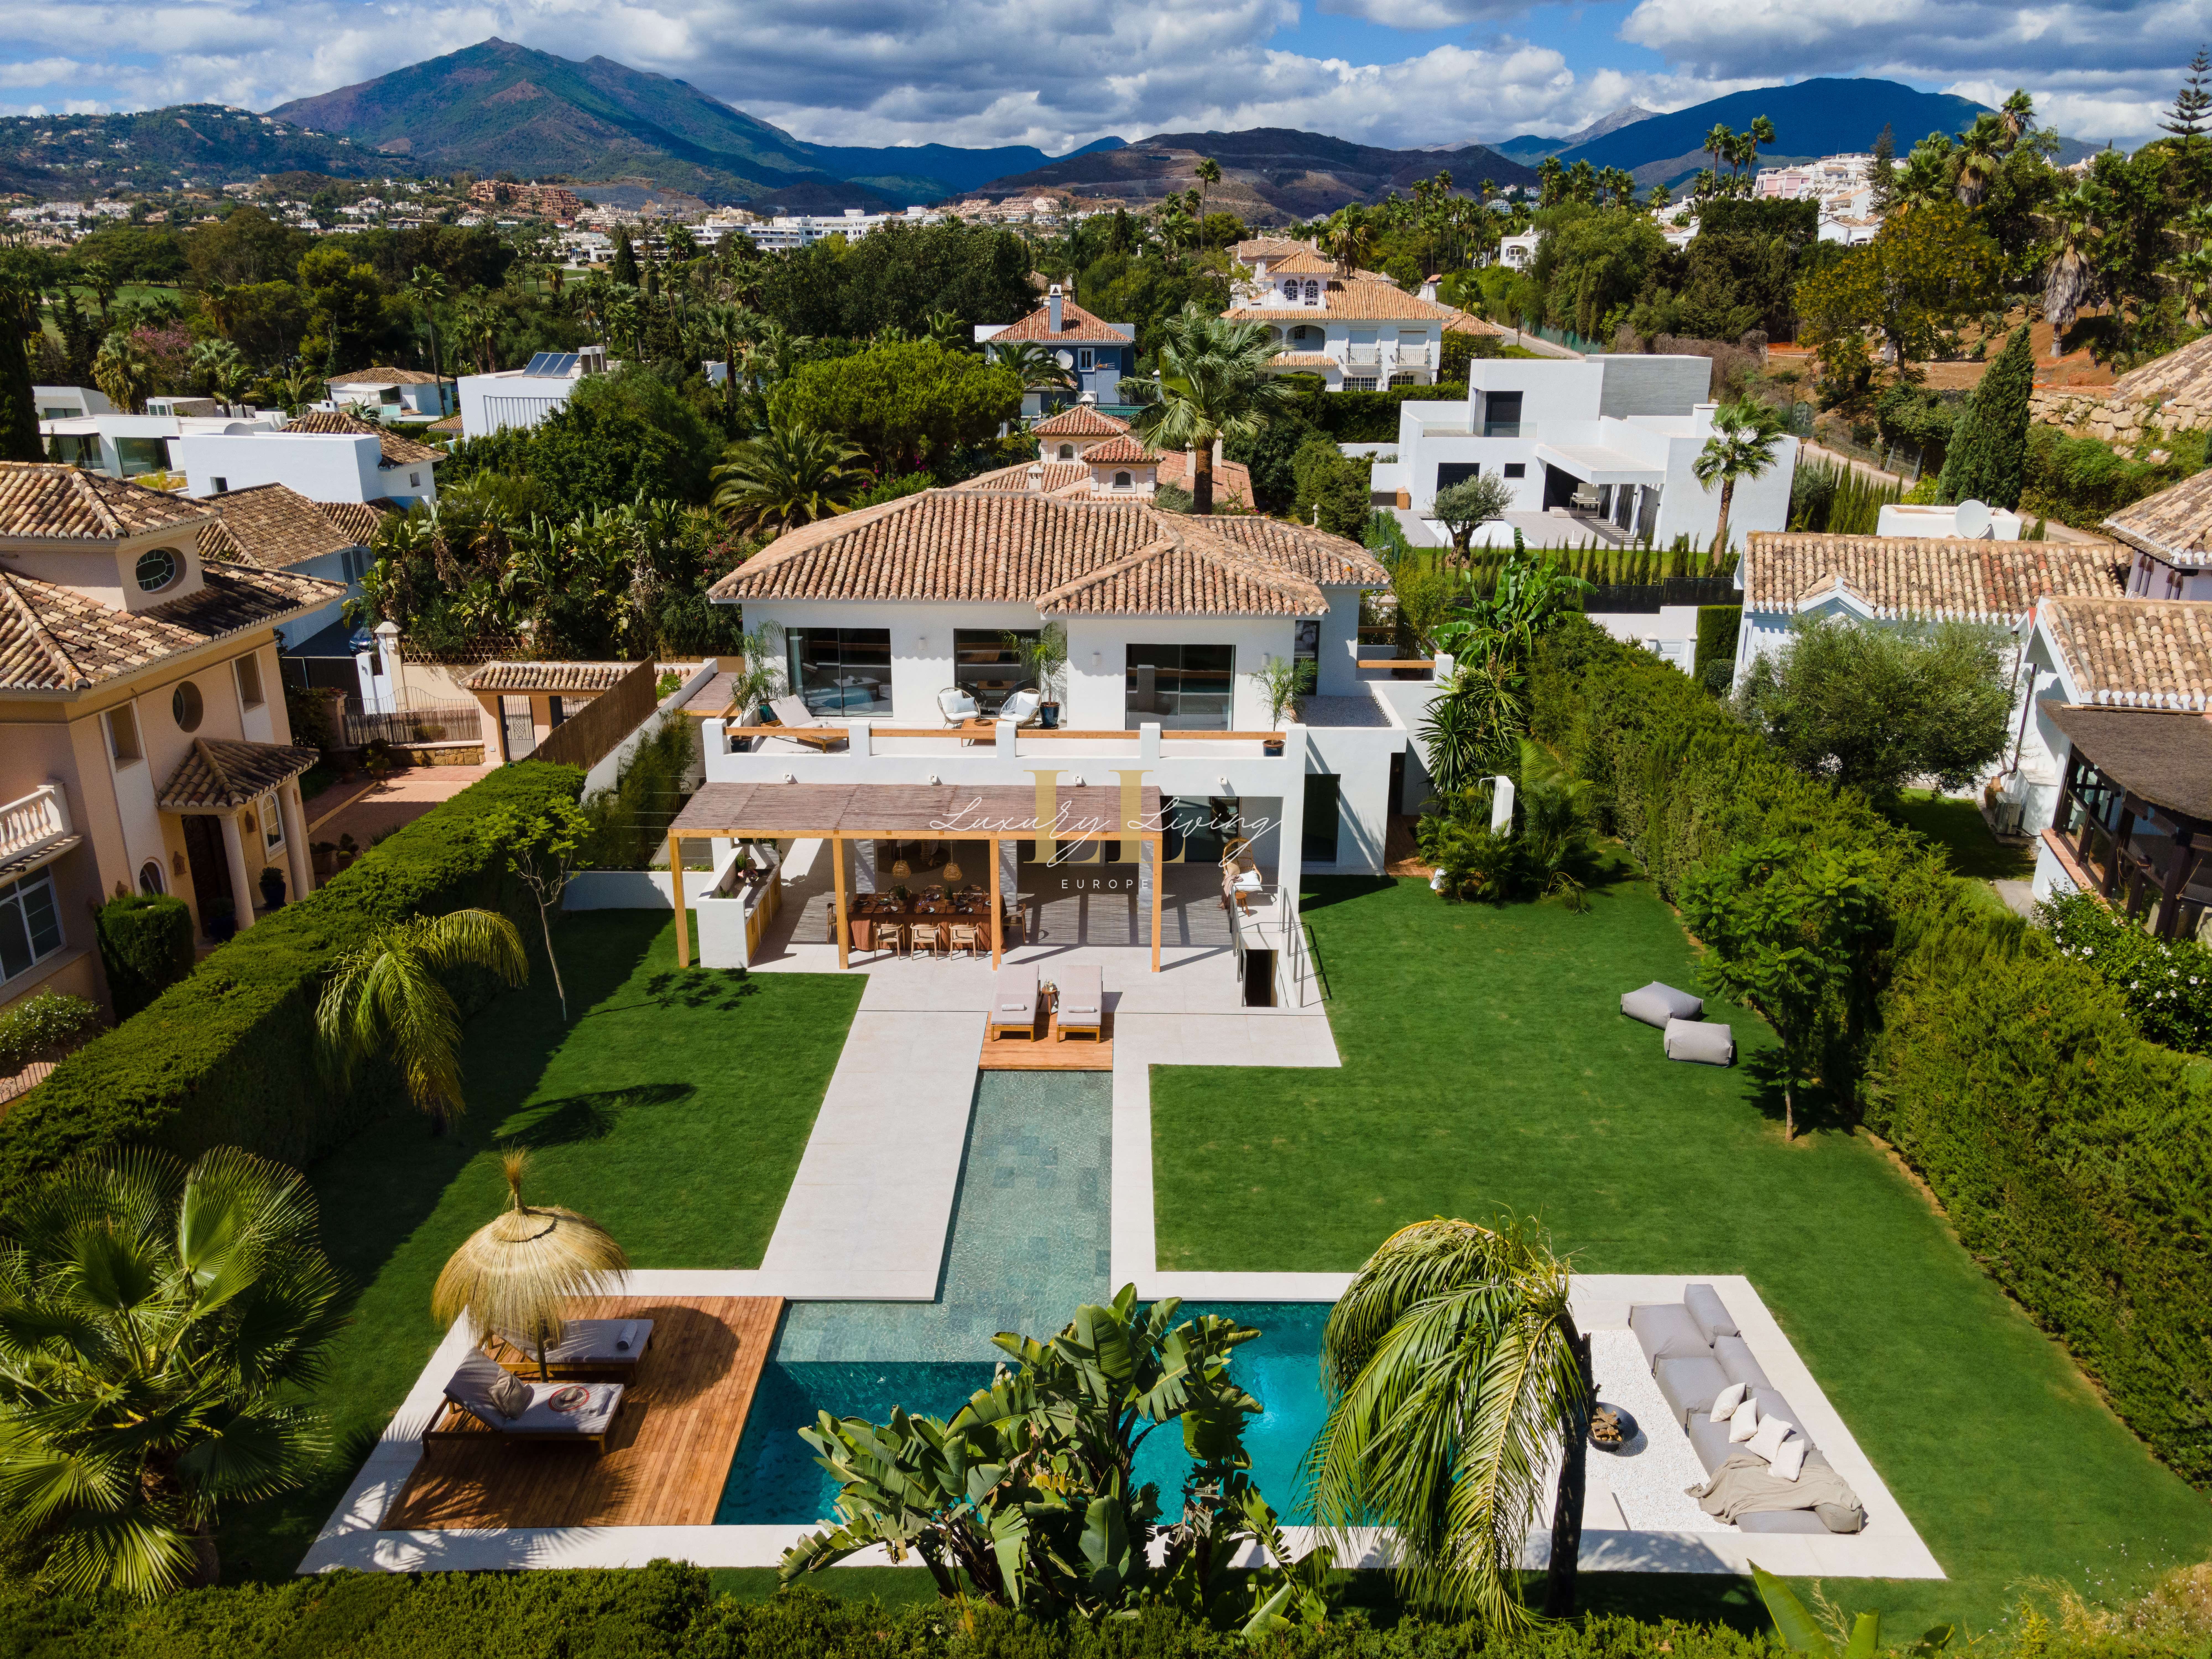 Villa Kyoto Accommodation in Marbella